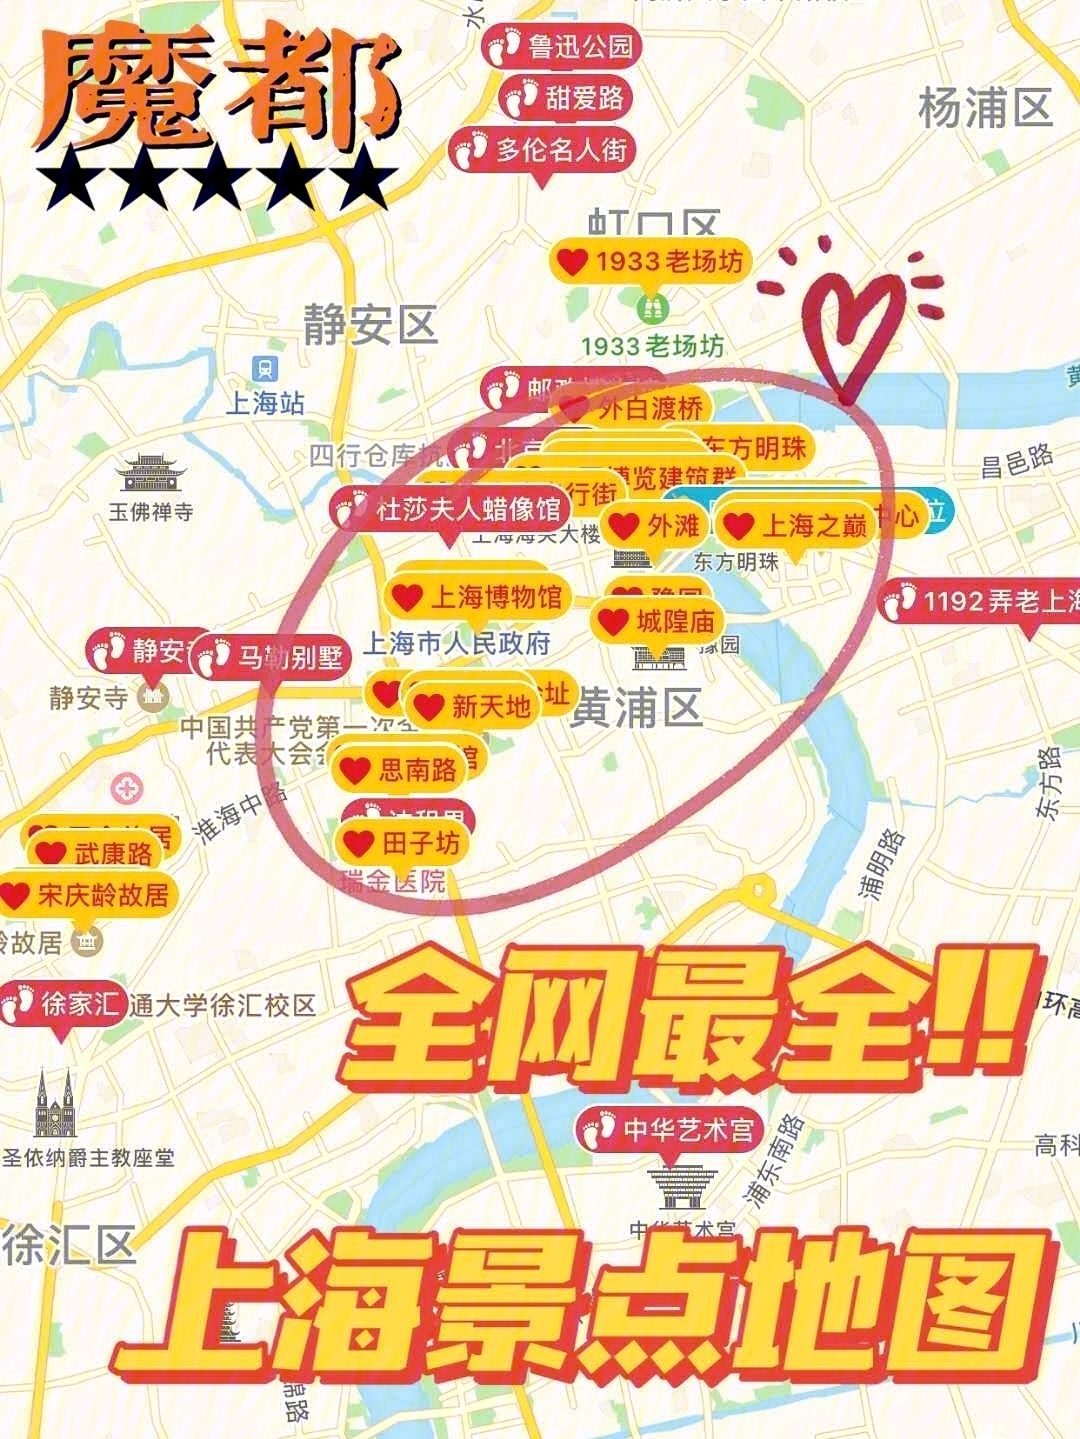 上海旅游景点地图73超详细路线懒仙女福音